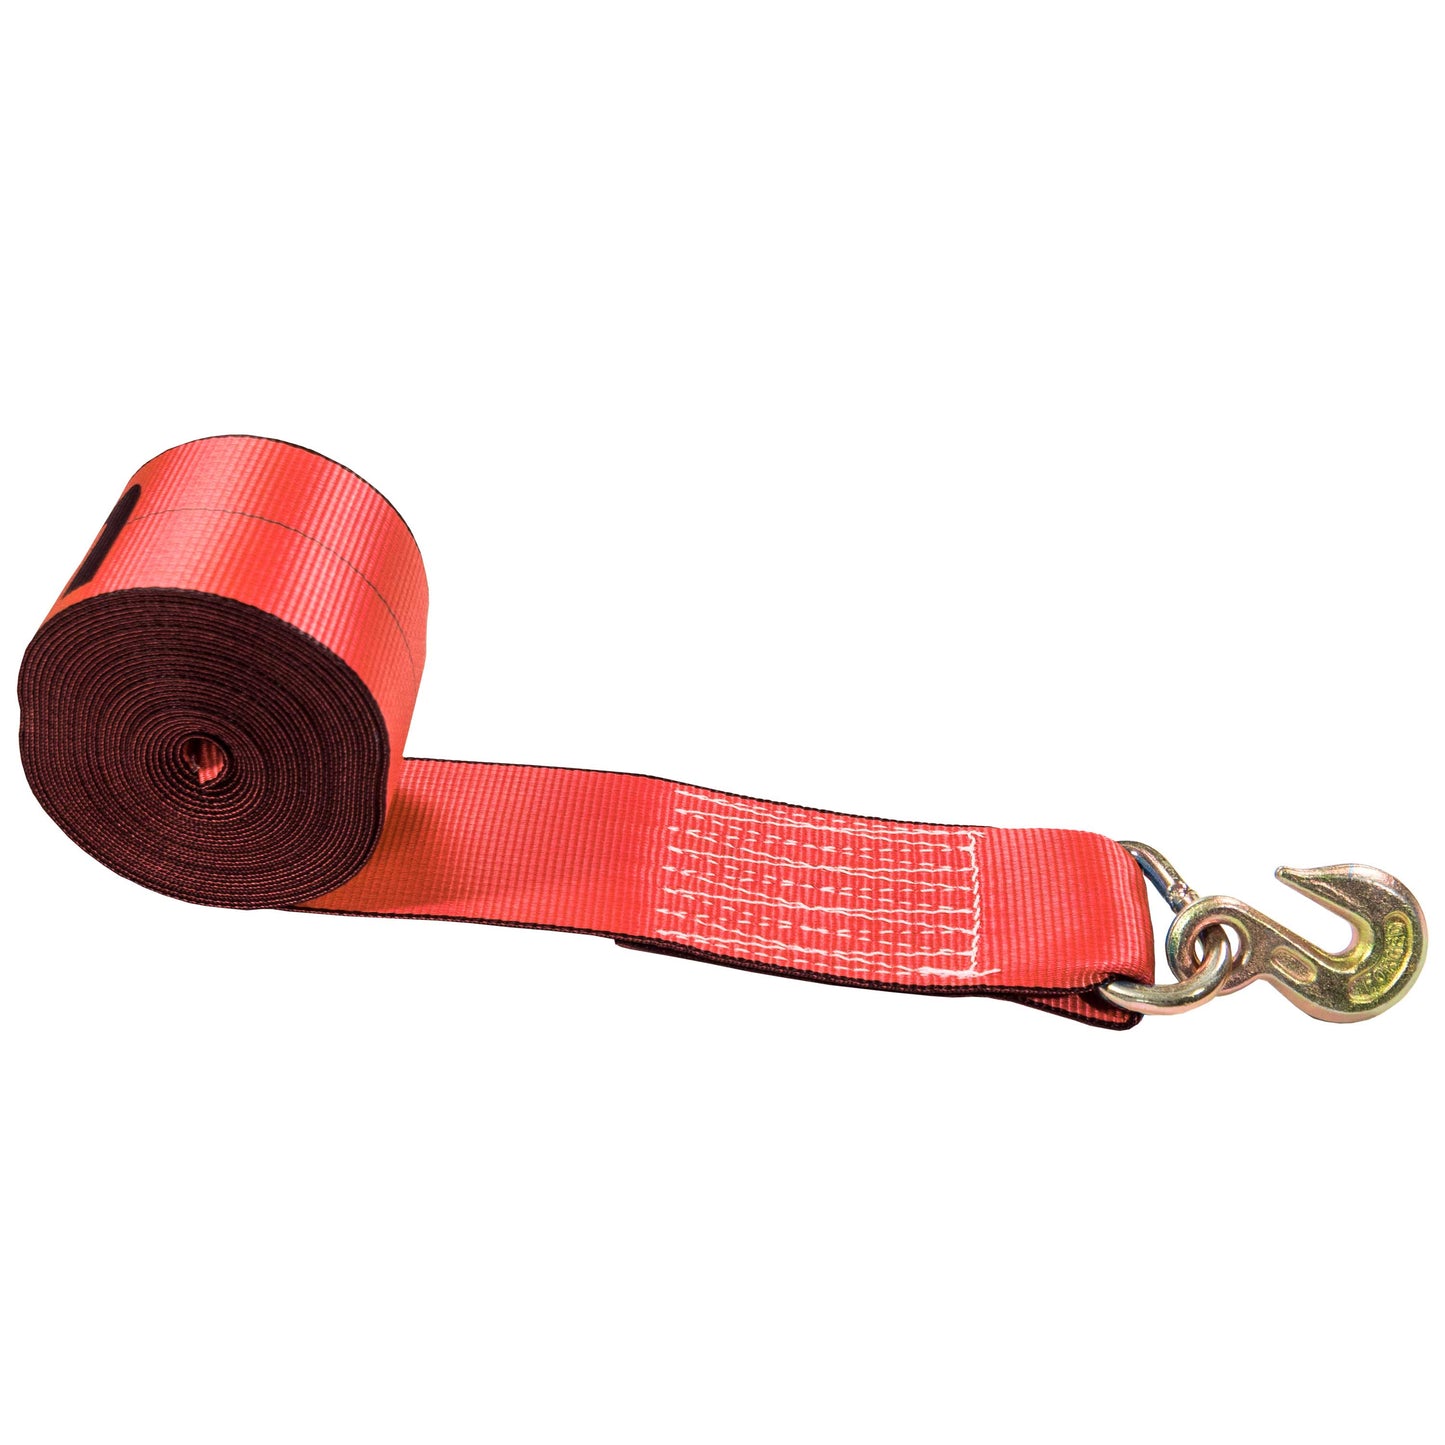 30' 4" heavy-duty red grab hook winch strap